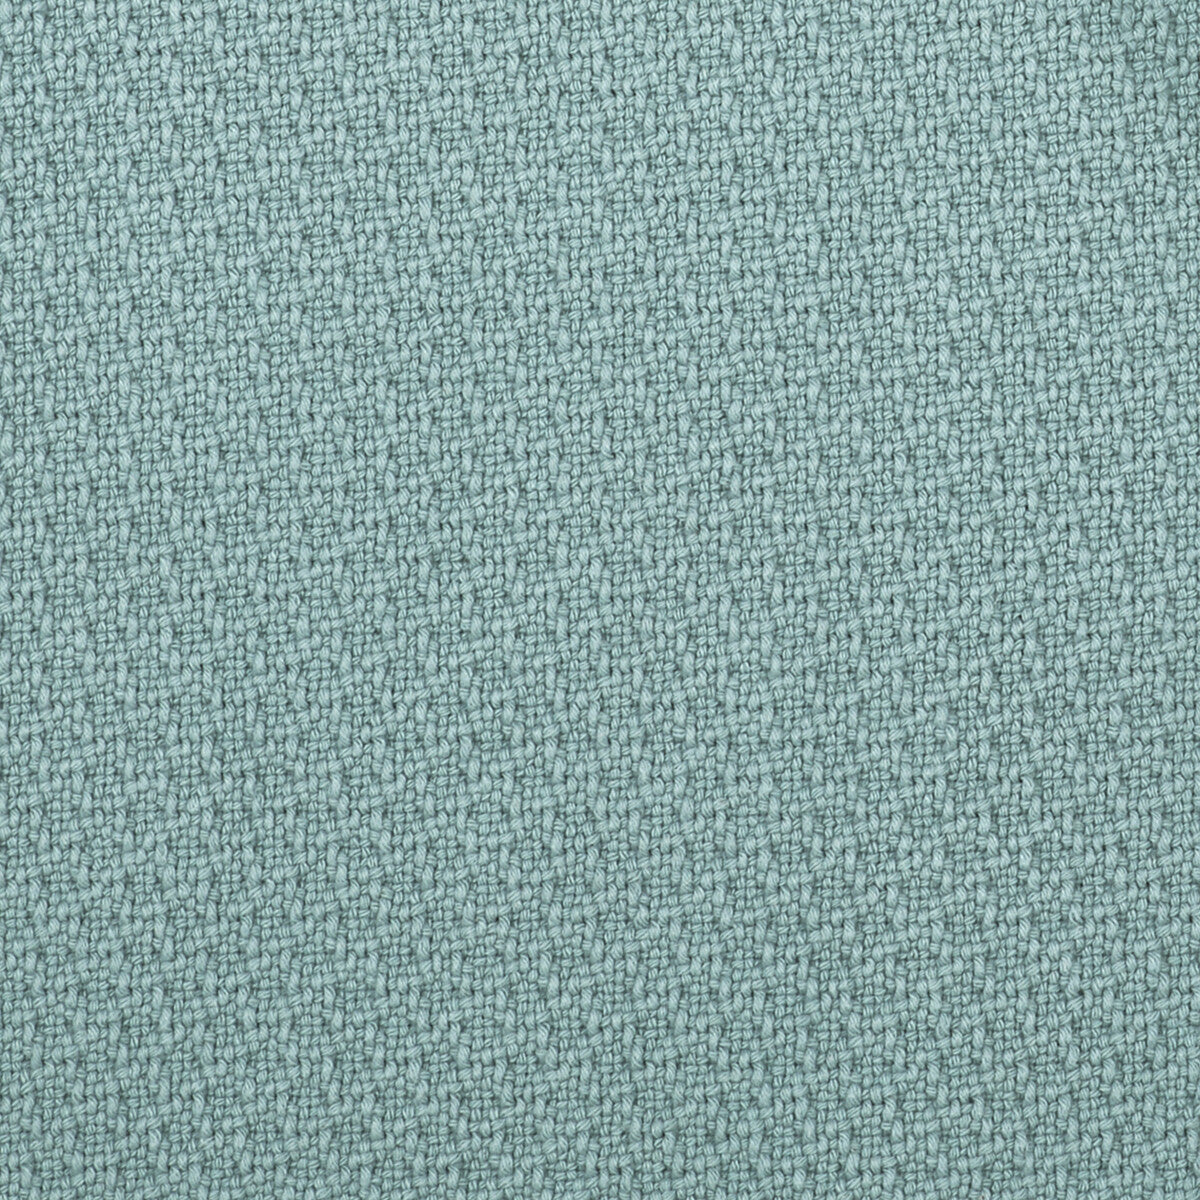 Ordono fabric in agua color - pattern LCT1003.002.0 - by Gaston y Daniela in the Lorenzo Castillo V collection